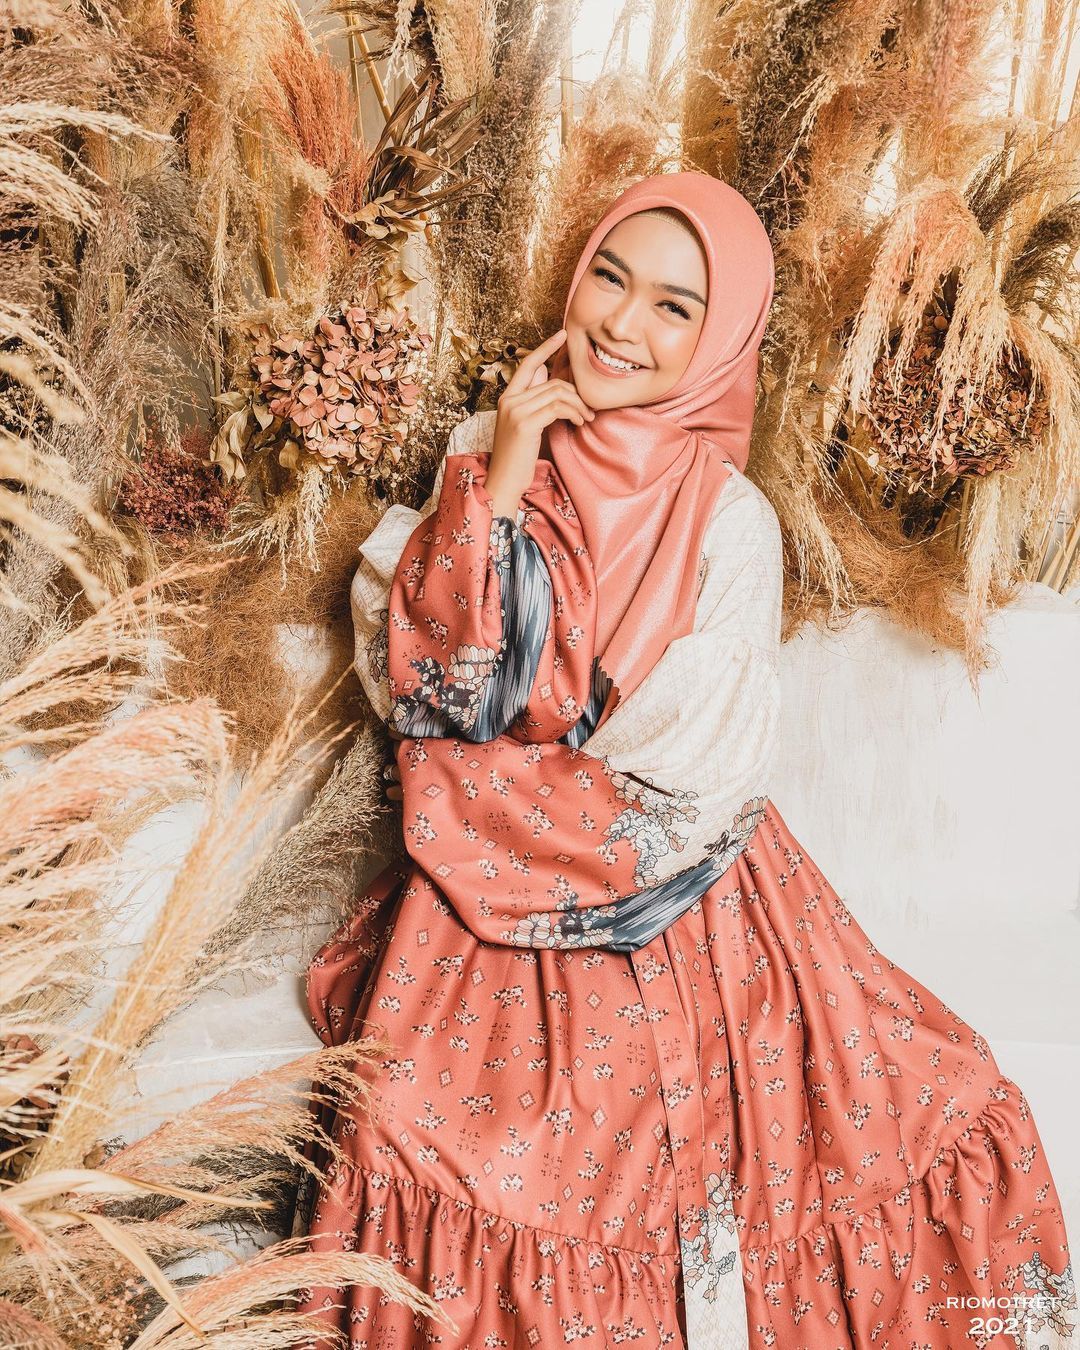 Intip Gaya Hijab Ria Ricis Jelang Pernikahan, Bikin Pangling!